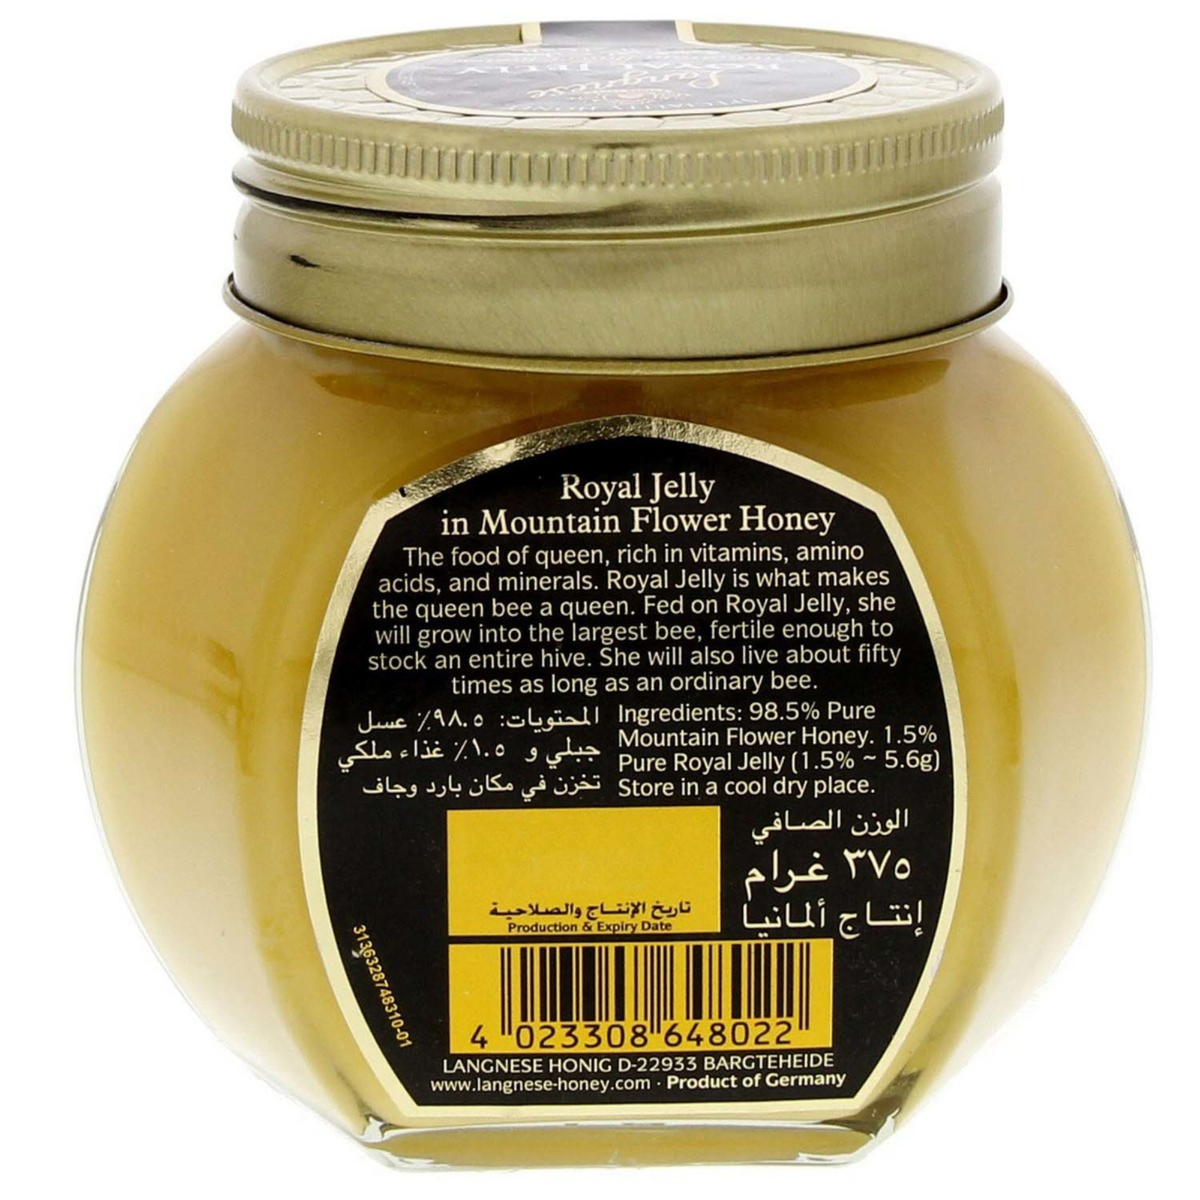 Langnese Royal Jelly In Mountain Flower Honey 375g